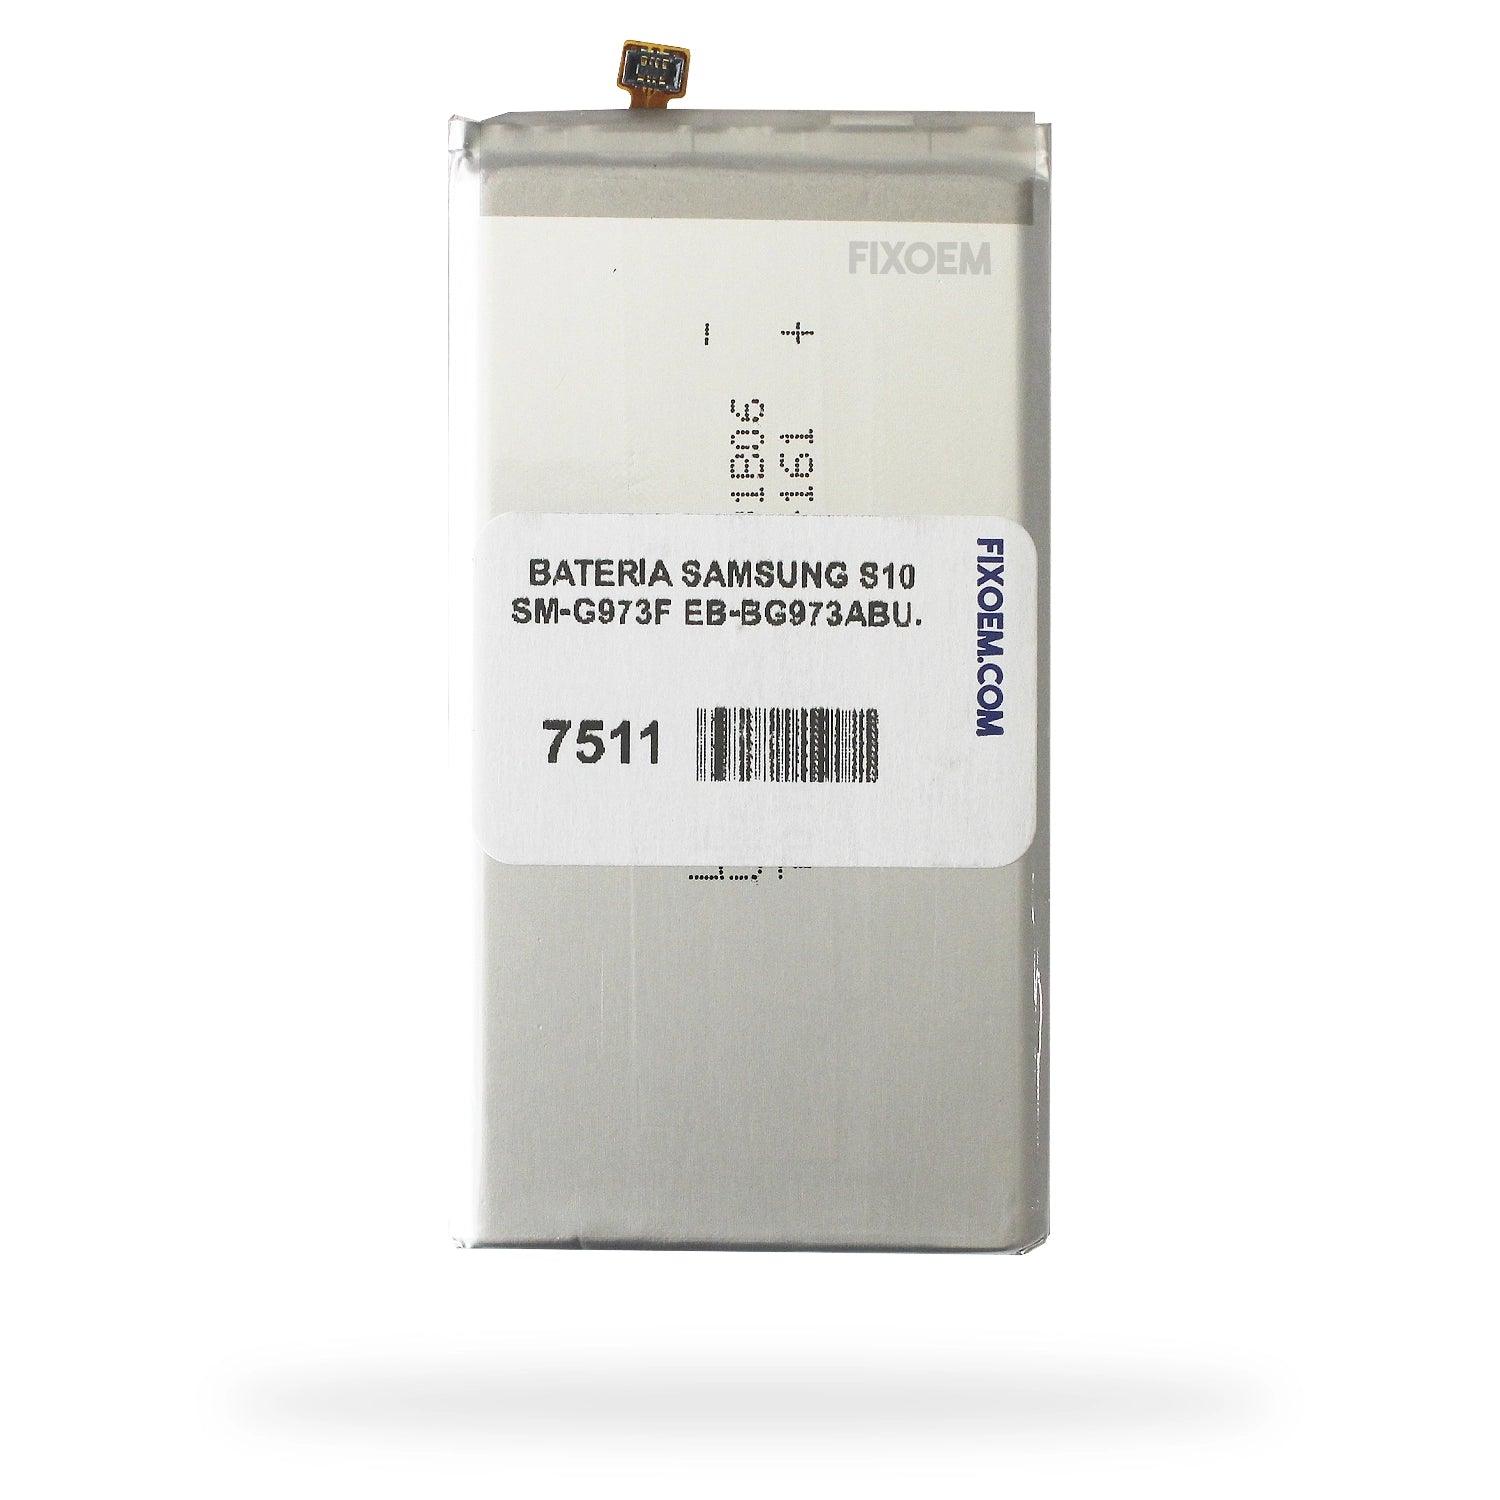 Bateria Samsung S10 Sm-G973f Eb-Bg973Abu. a solo $ 120.00 Refaccion y puestos celulares, refurbish y microelectronica.- FixOEM